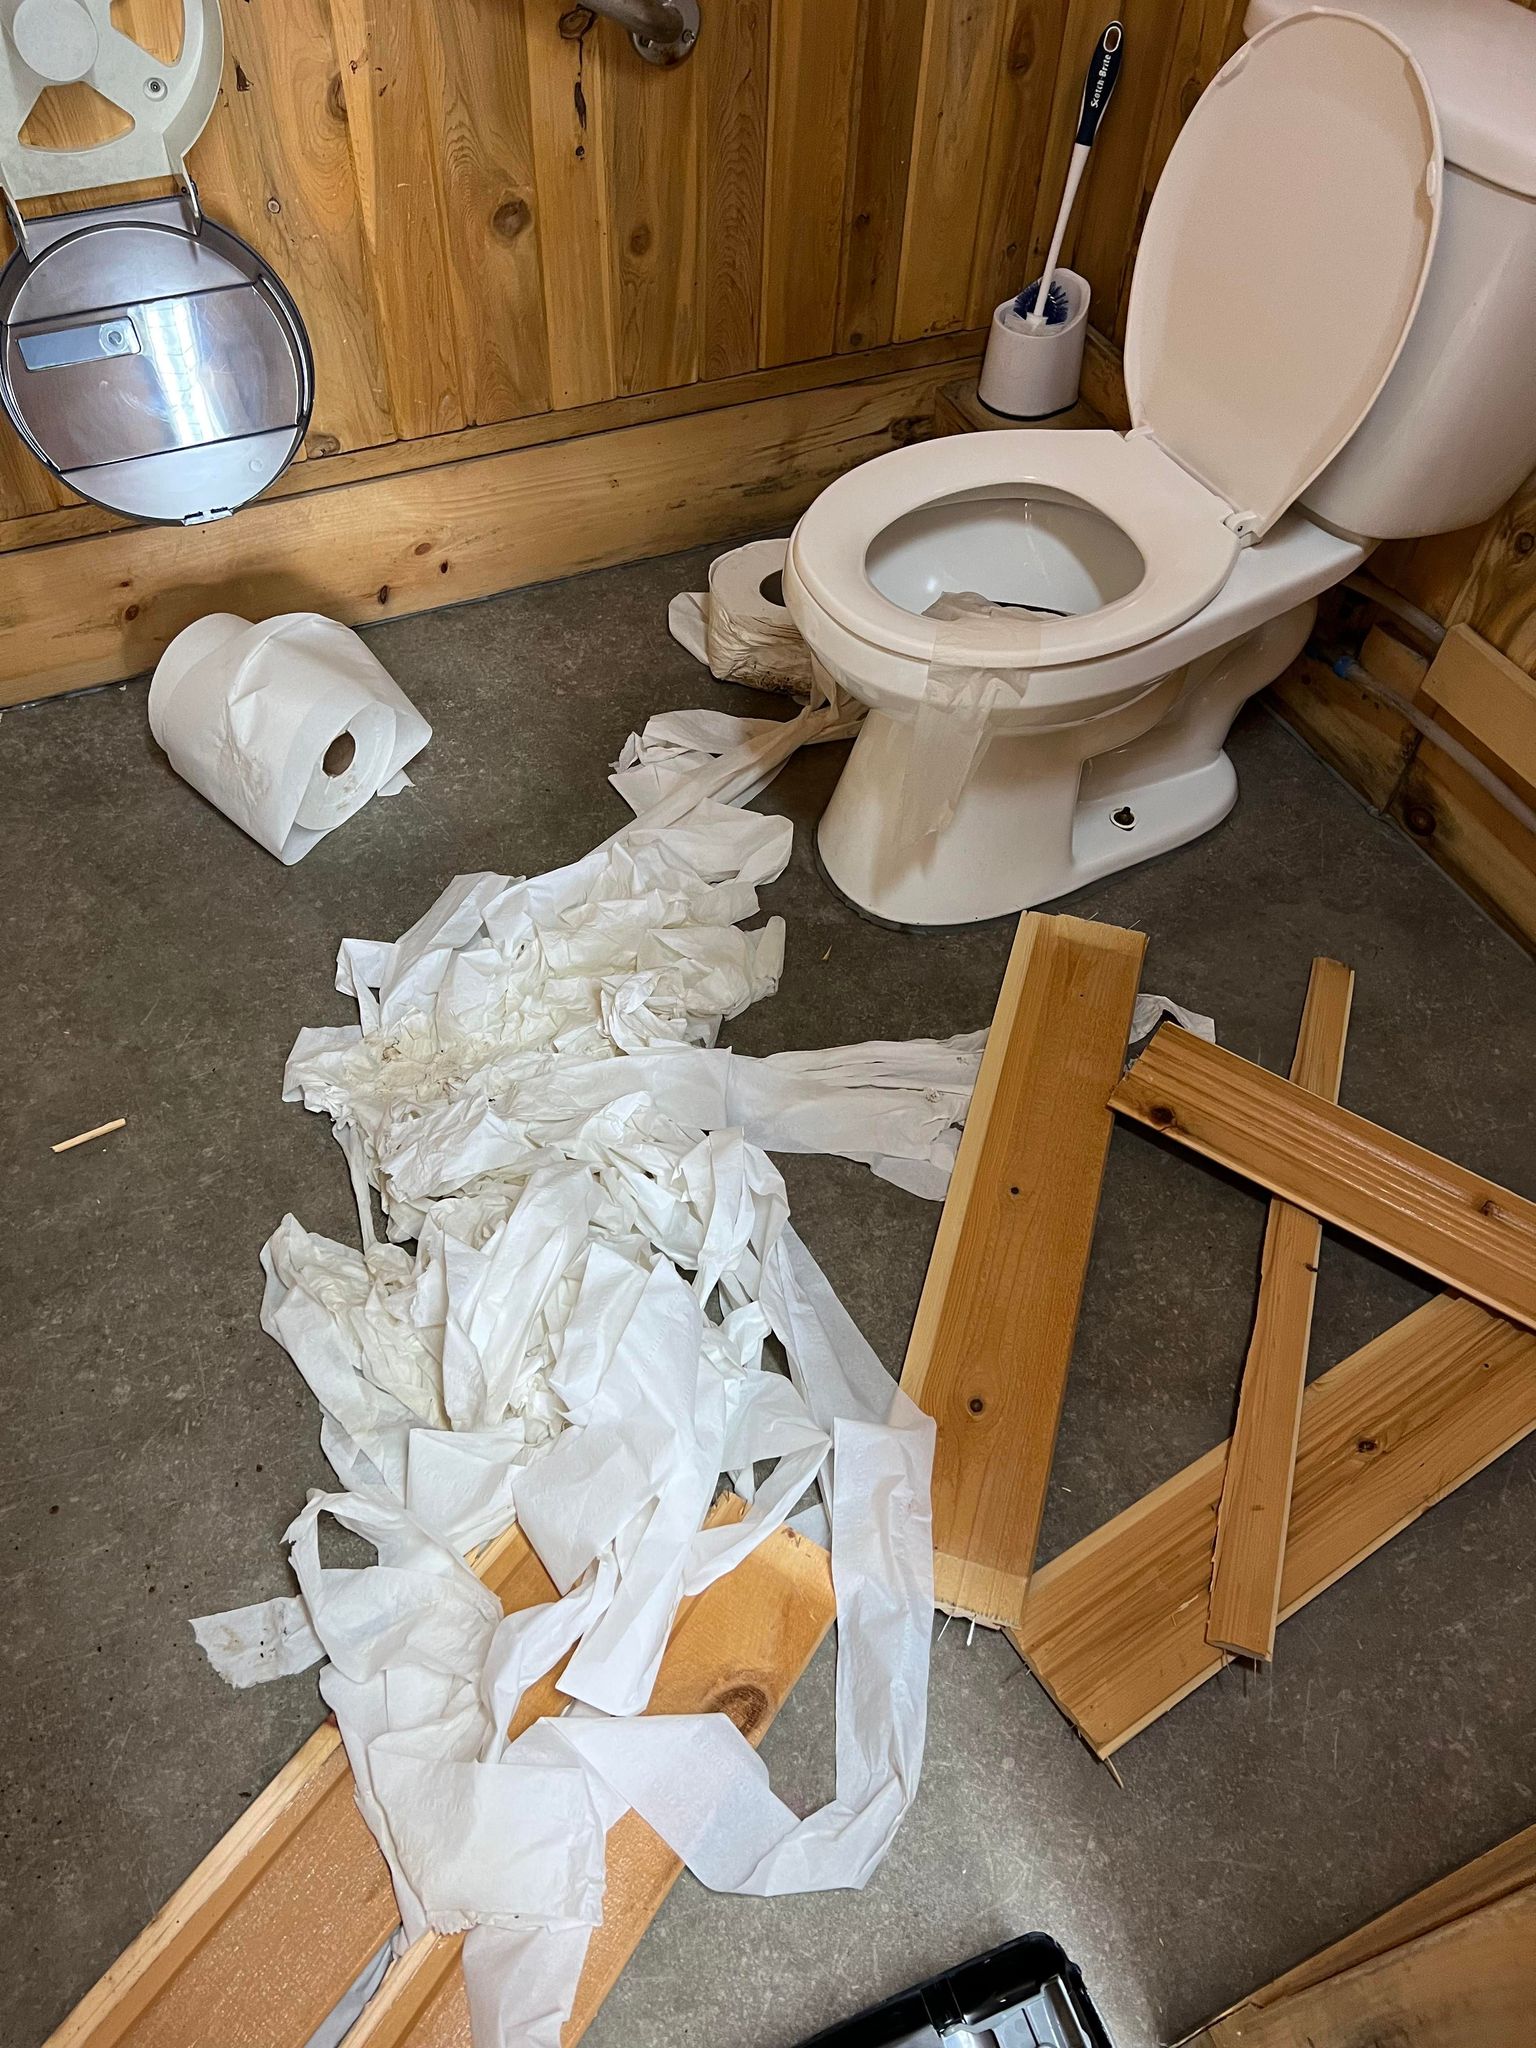 Papier de toilette étendu sur le sol d'une salle de bain publique. Plusieurs morceaux de bois cassé traîne au sol.